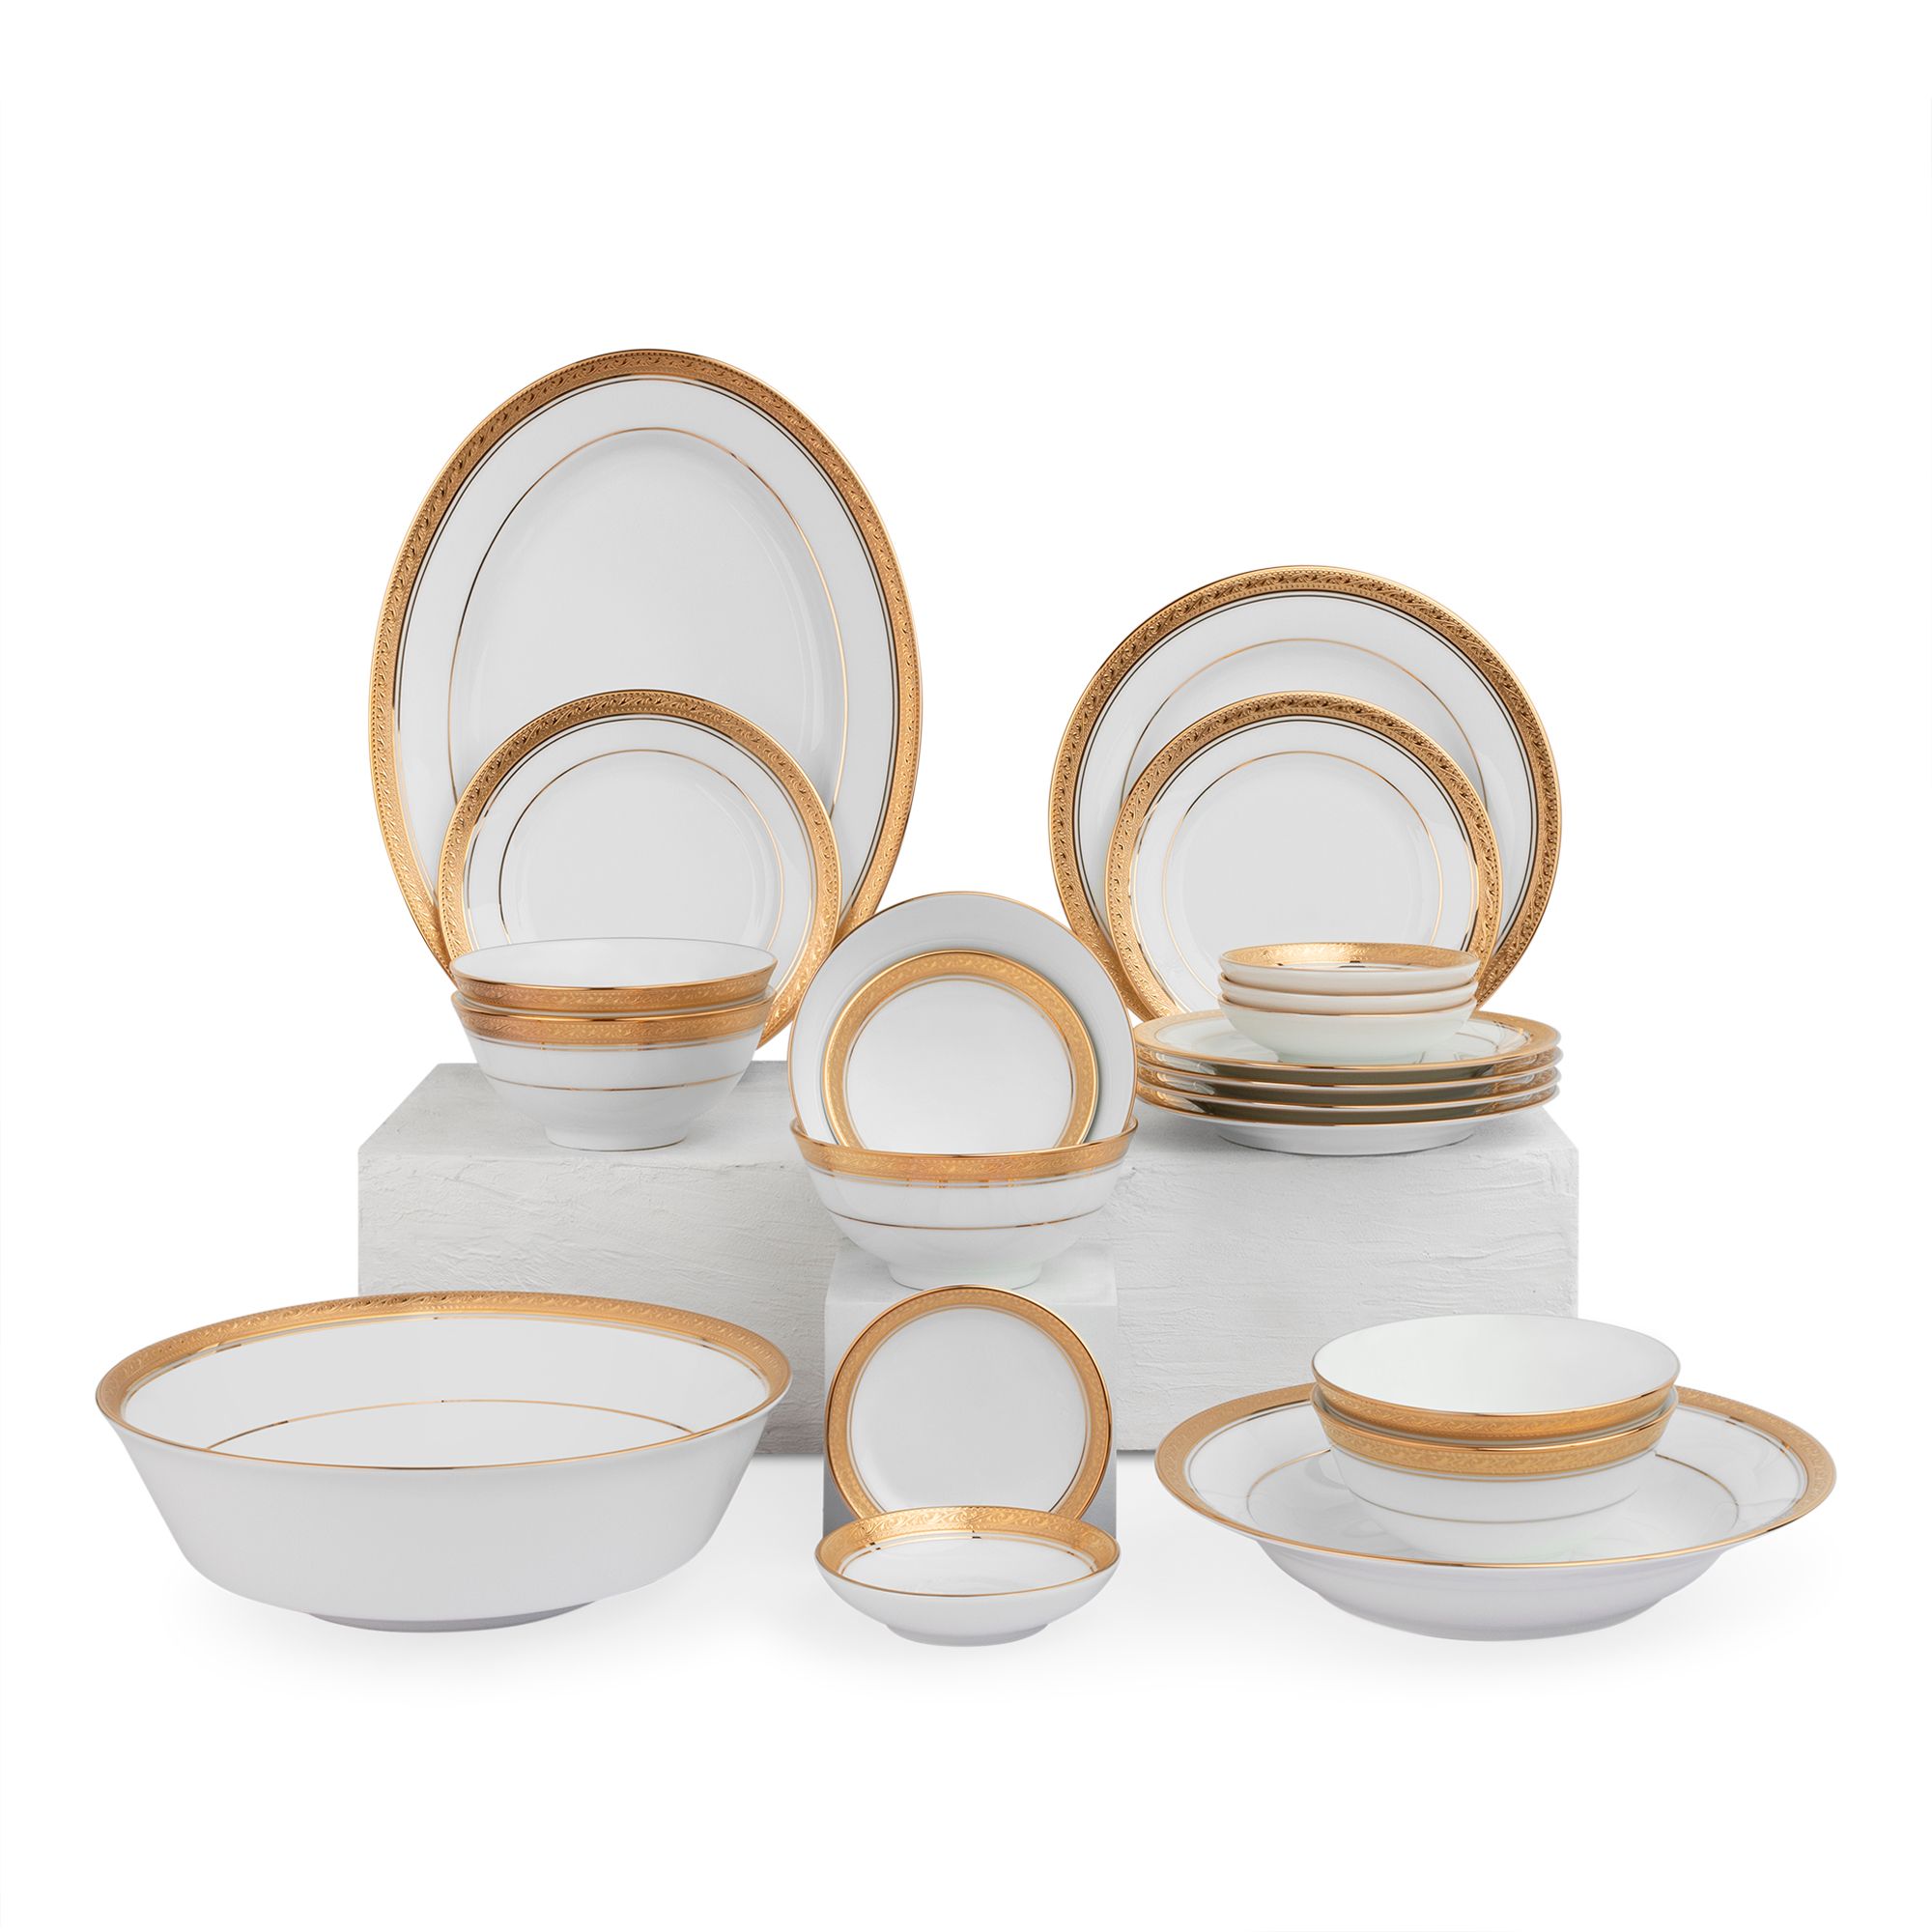  Bộ bát đĩa ăn Châu Á cơ bản 22 món sứ trắng | Crestwood Gold 4167L 